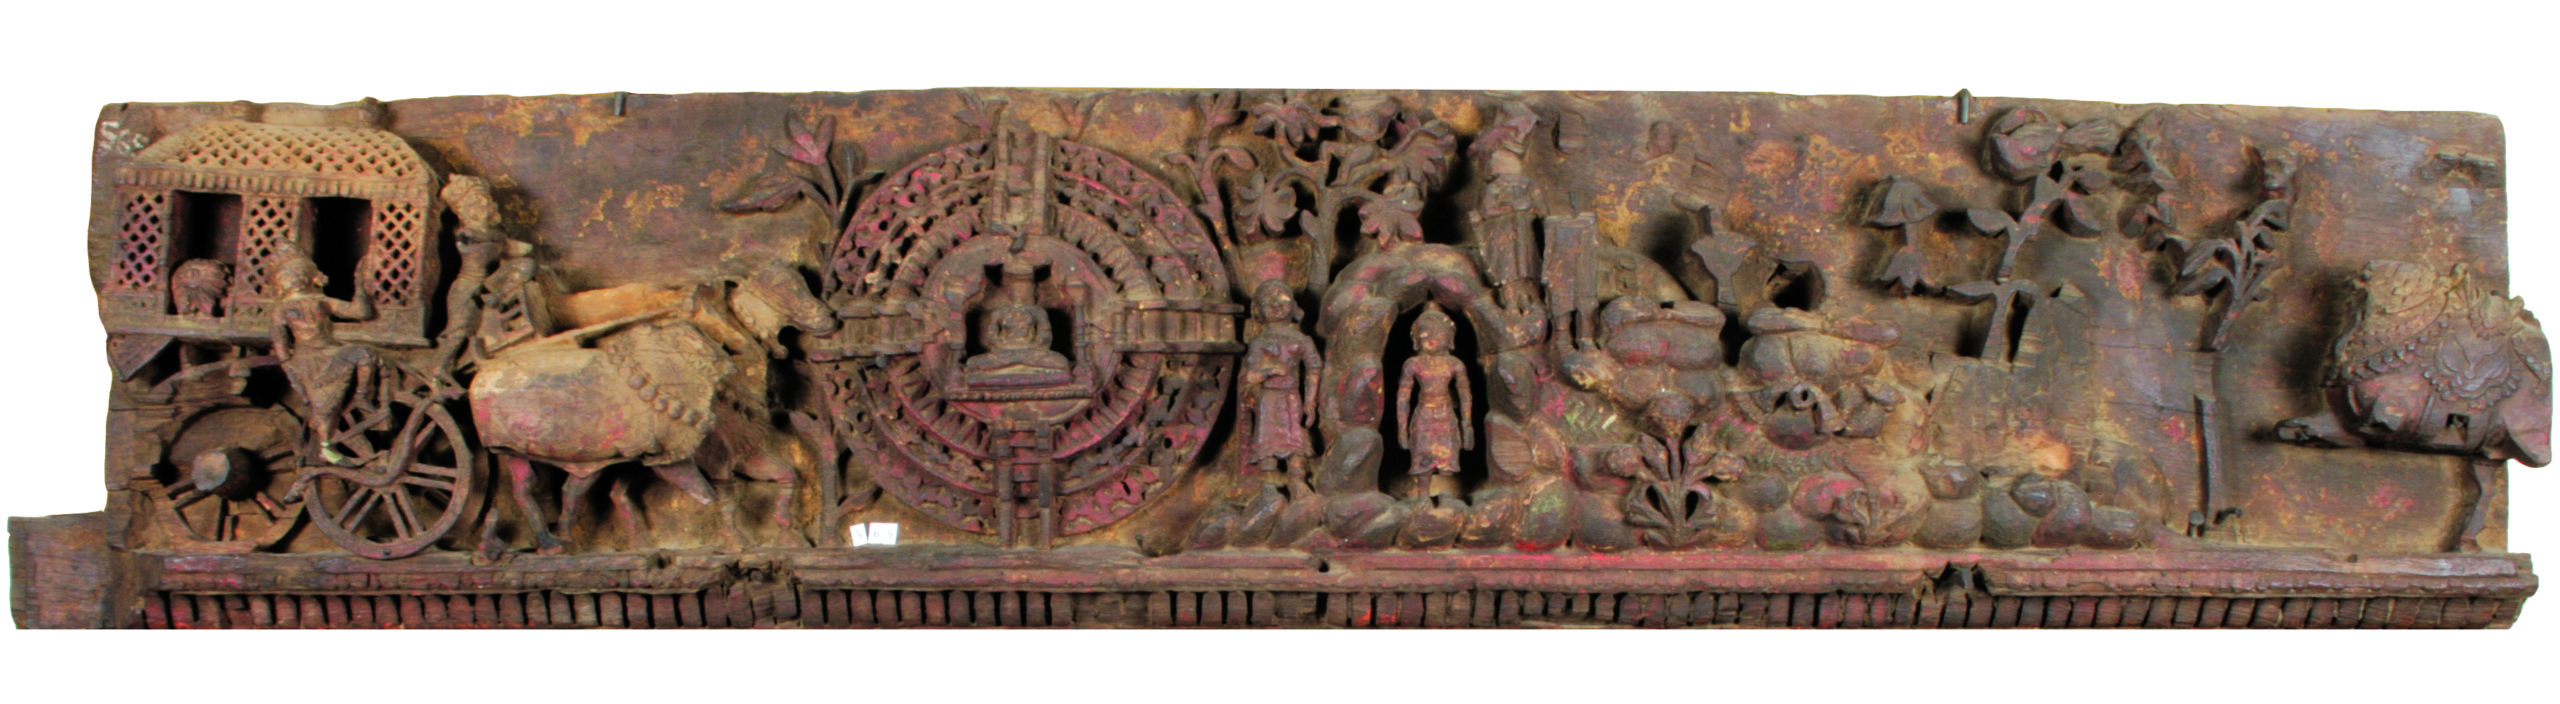 Door panel depicting Jaina narratives, Gujarat, 17th century A.D